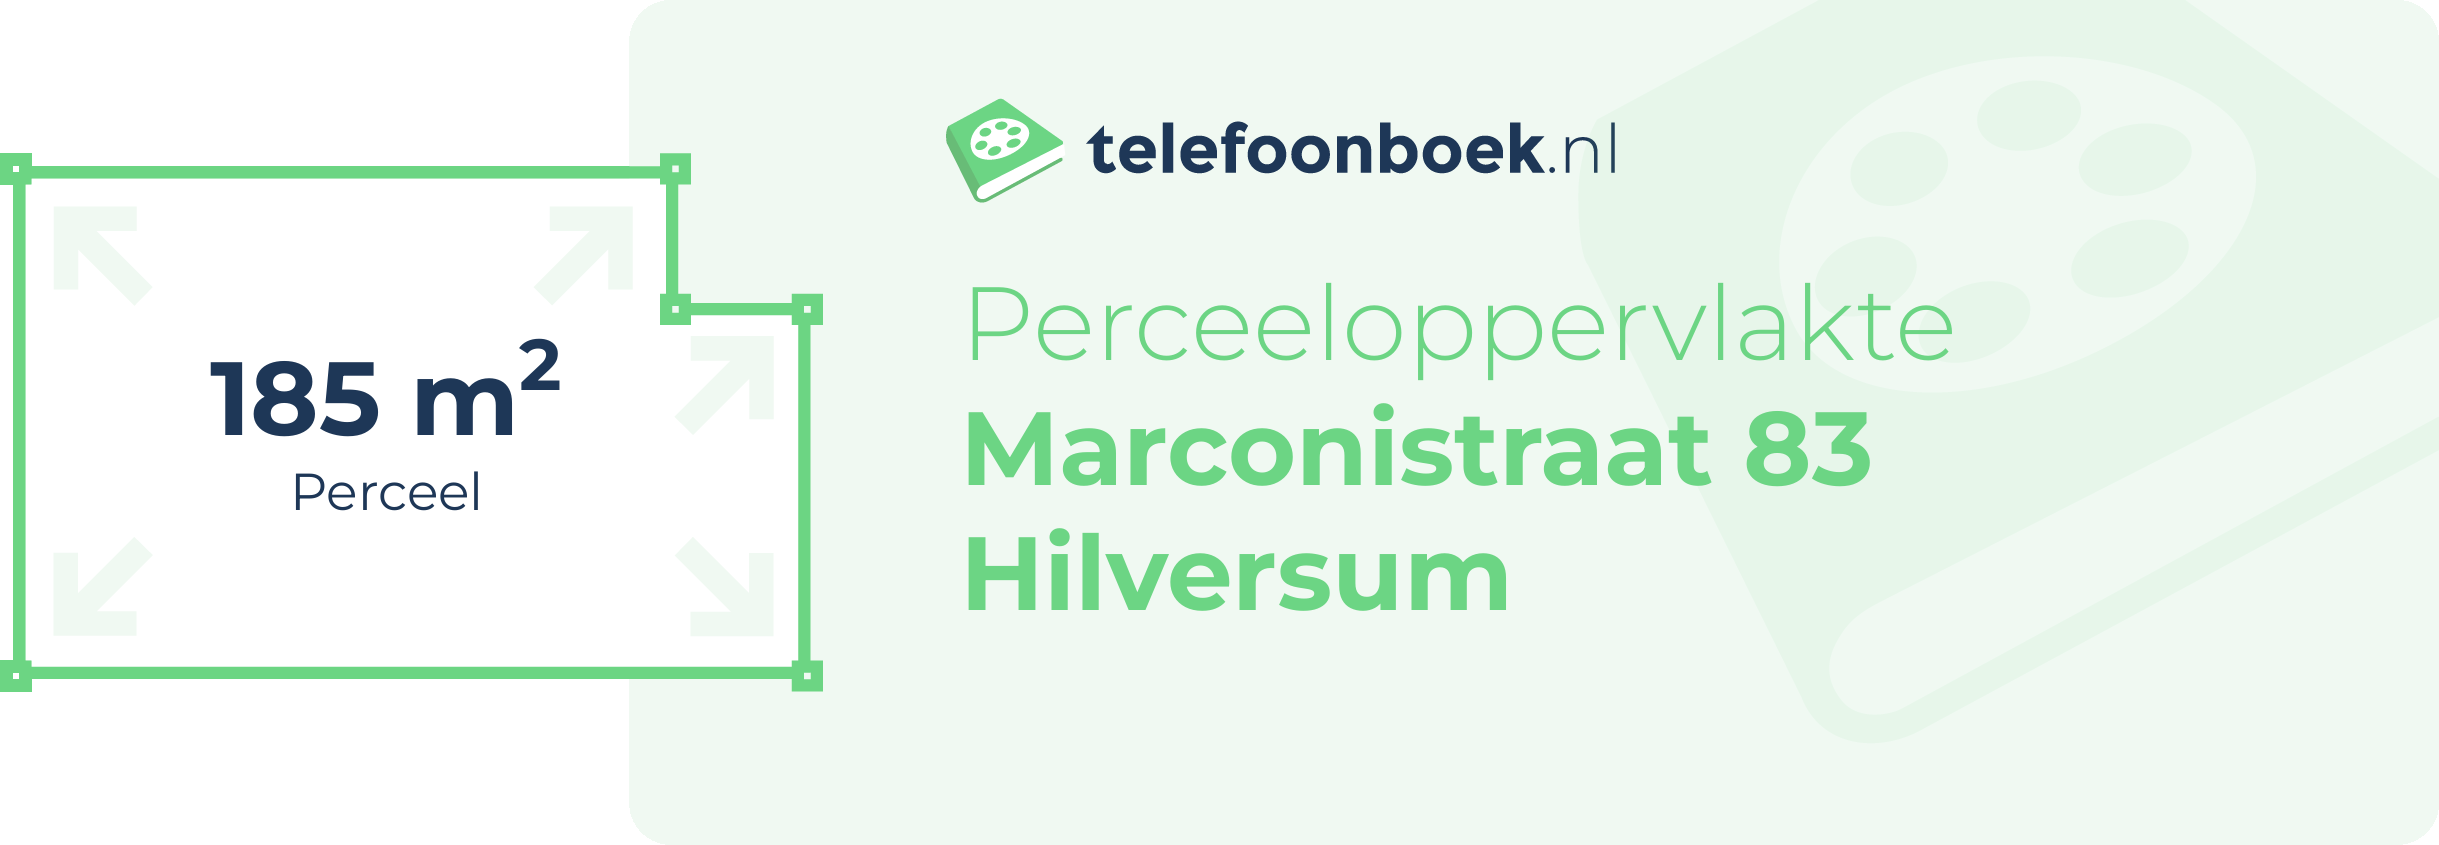 Perceeloppervlakte Marconistraat 83 Hilversum